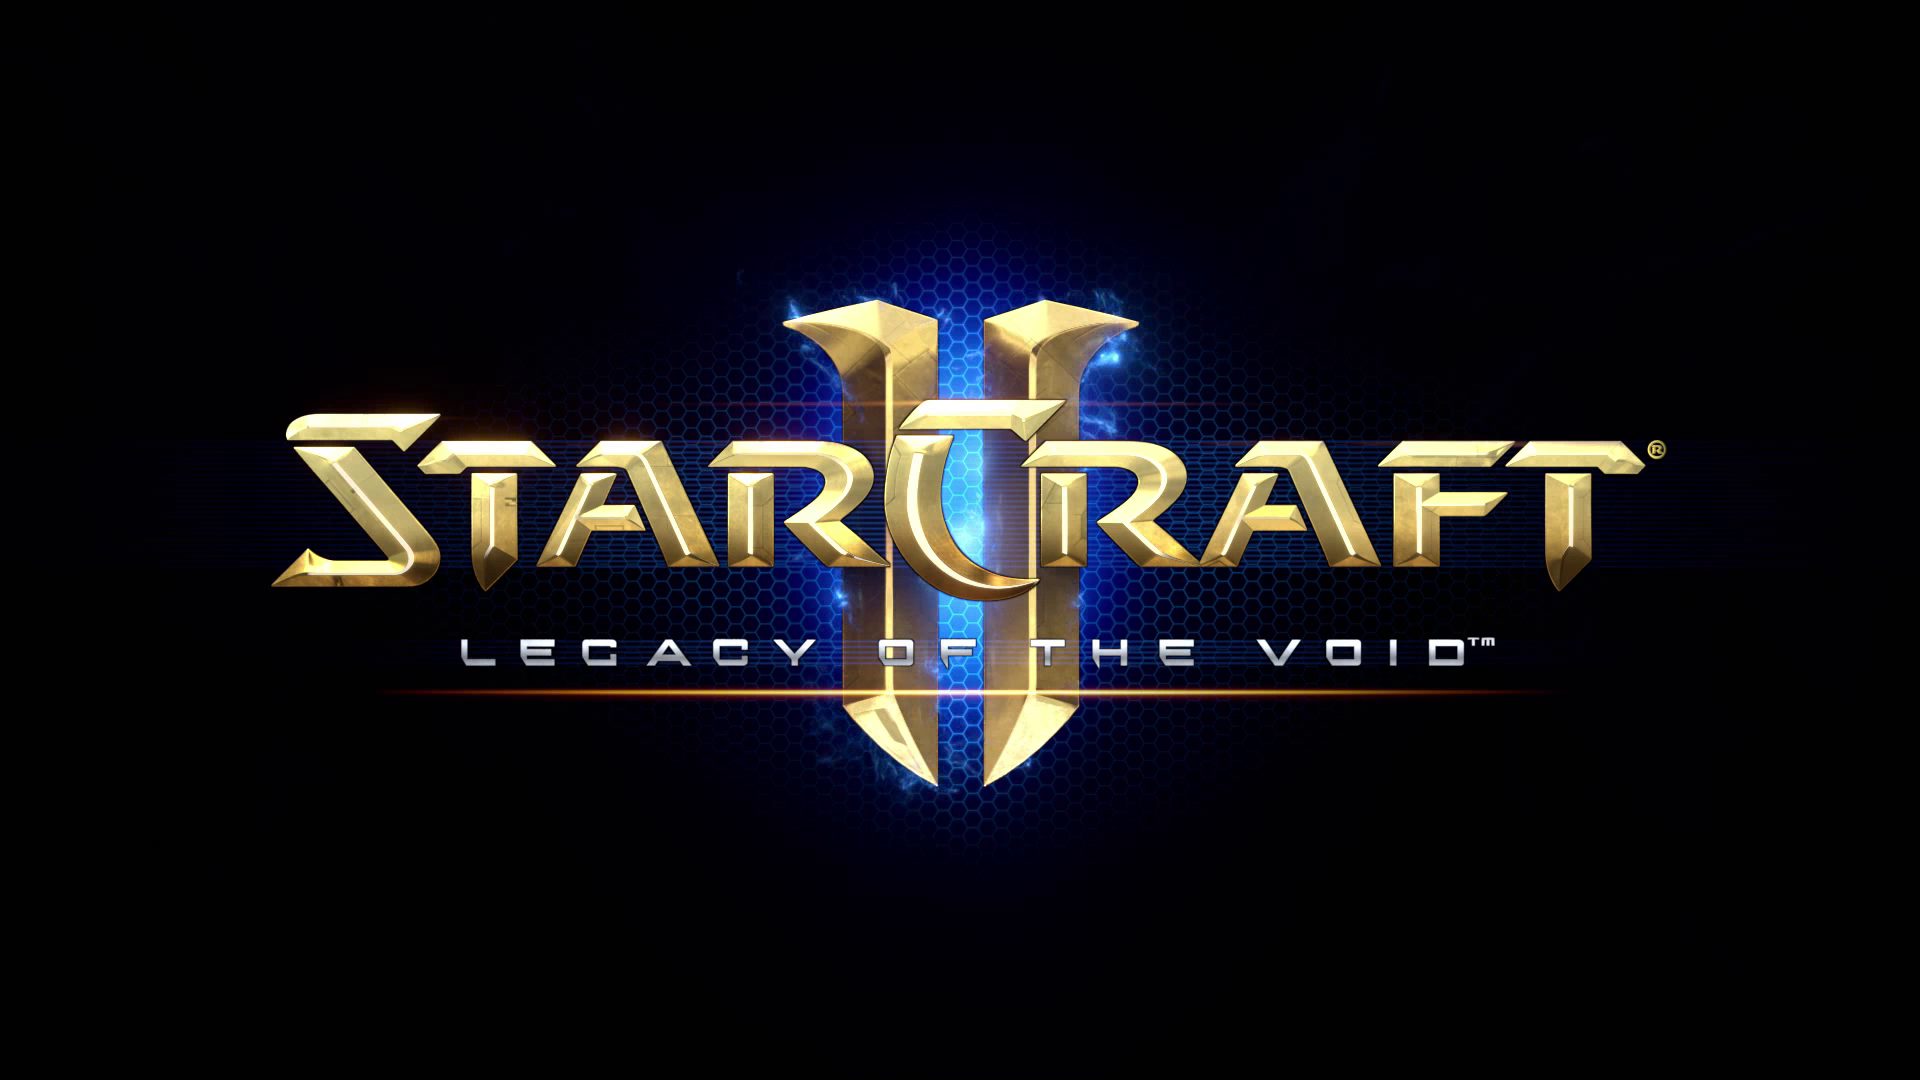 StarCraft II Legacy of the Void - ПОЛНОЕ ПРОХОЖДЕНИЕ 15 Серия ЛЕГЕНДАРНАЯ ЧУМОВАЯ СТРАТЕГИЯ ДЛЯ ДУШИ